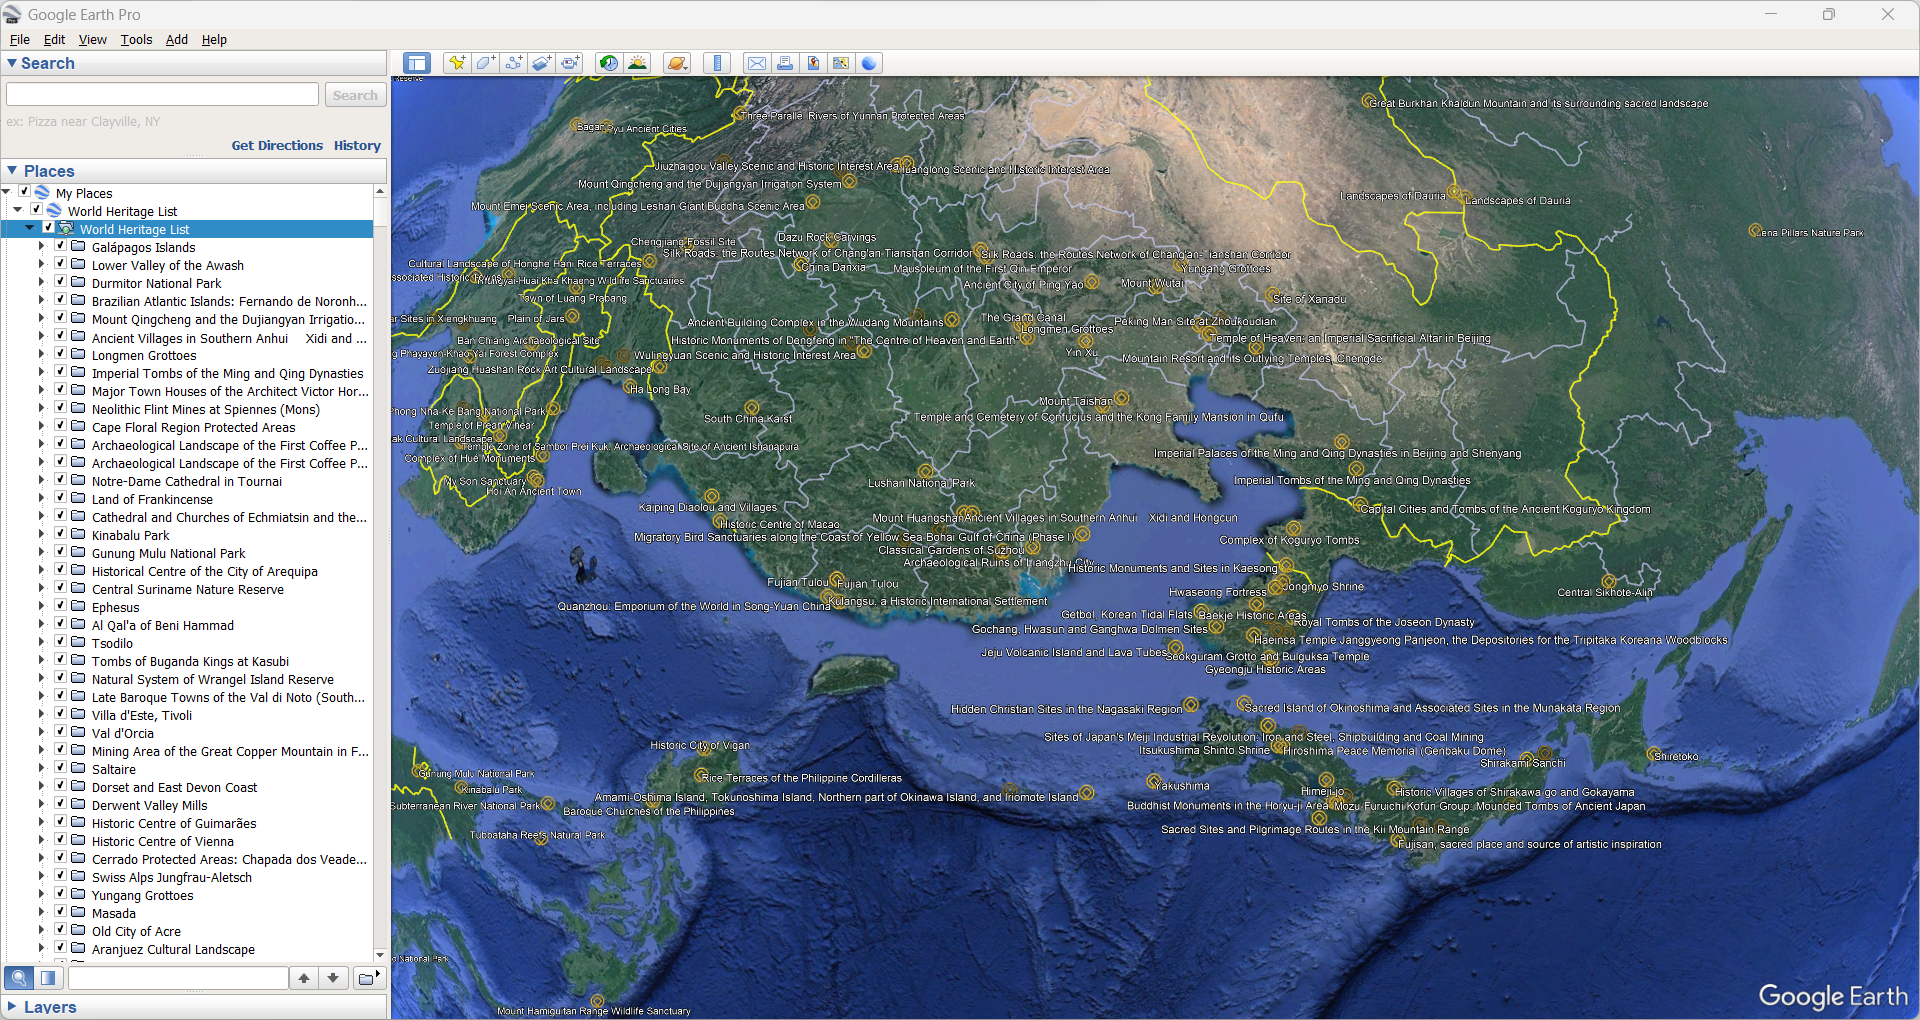 UNESCO World Heritage List kmz on Google Earth Pro